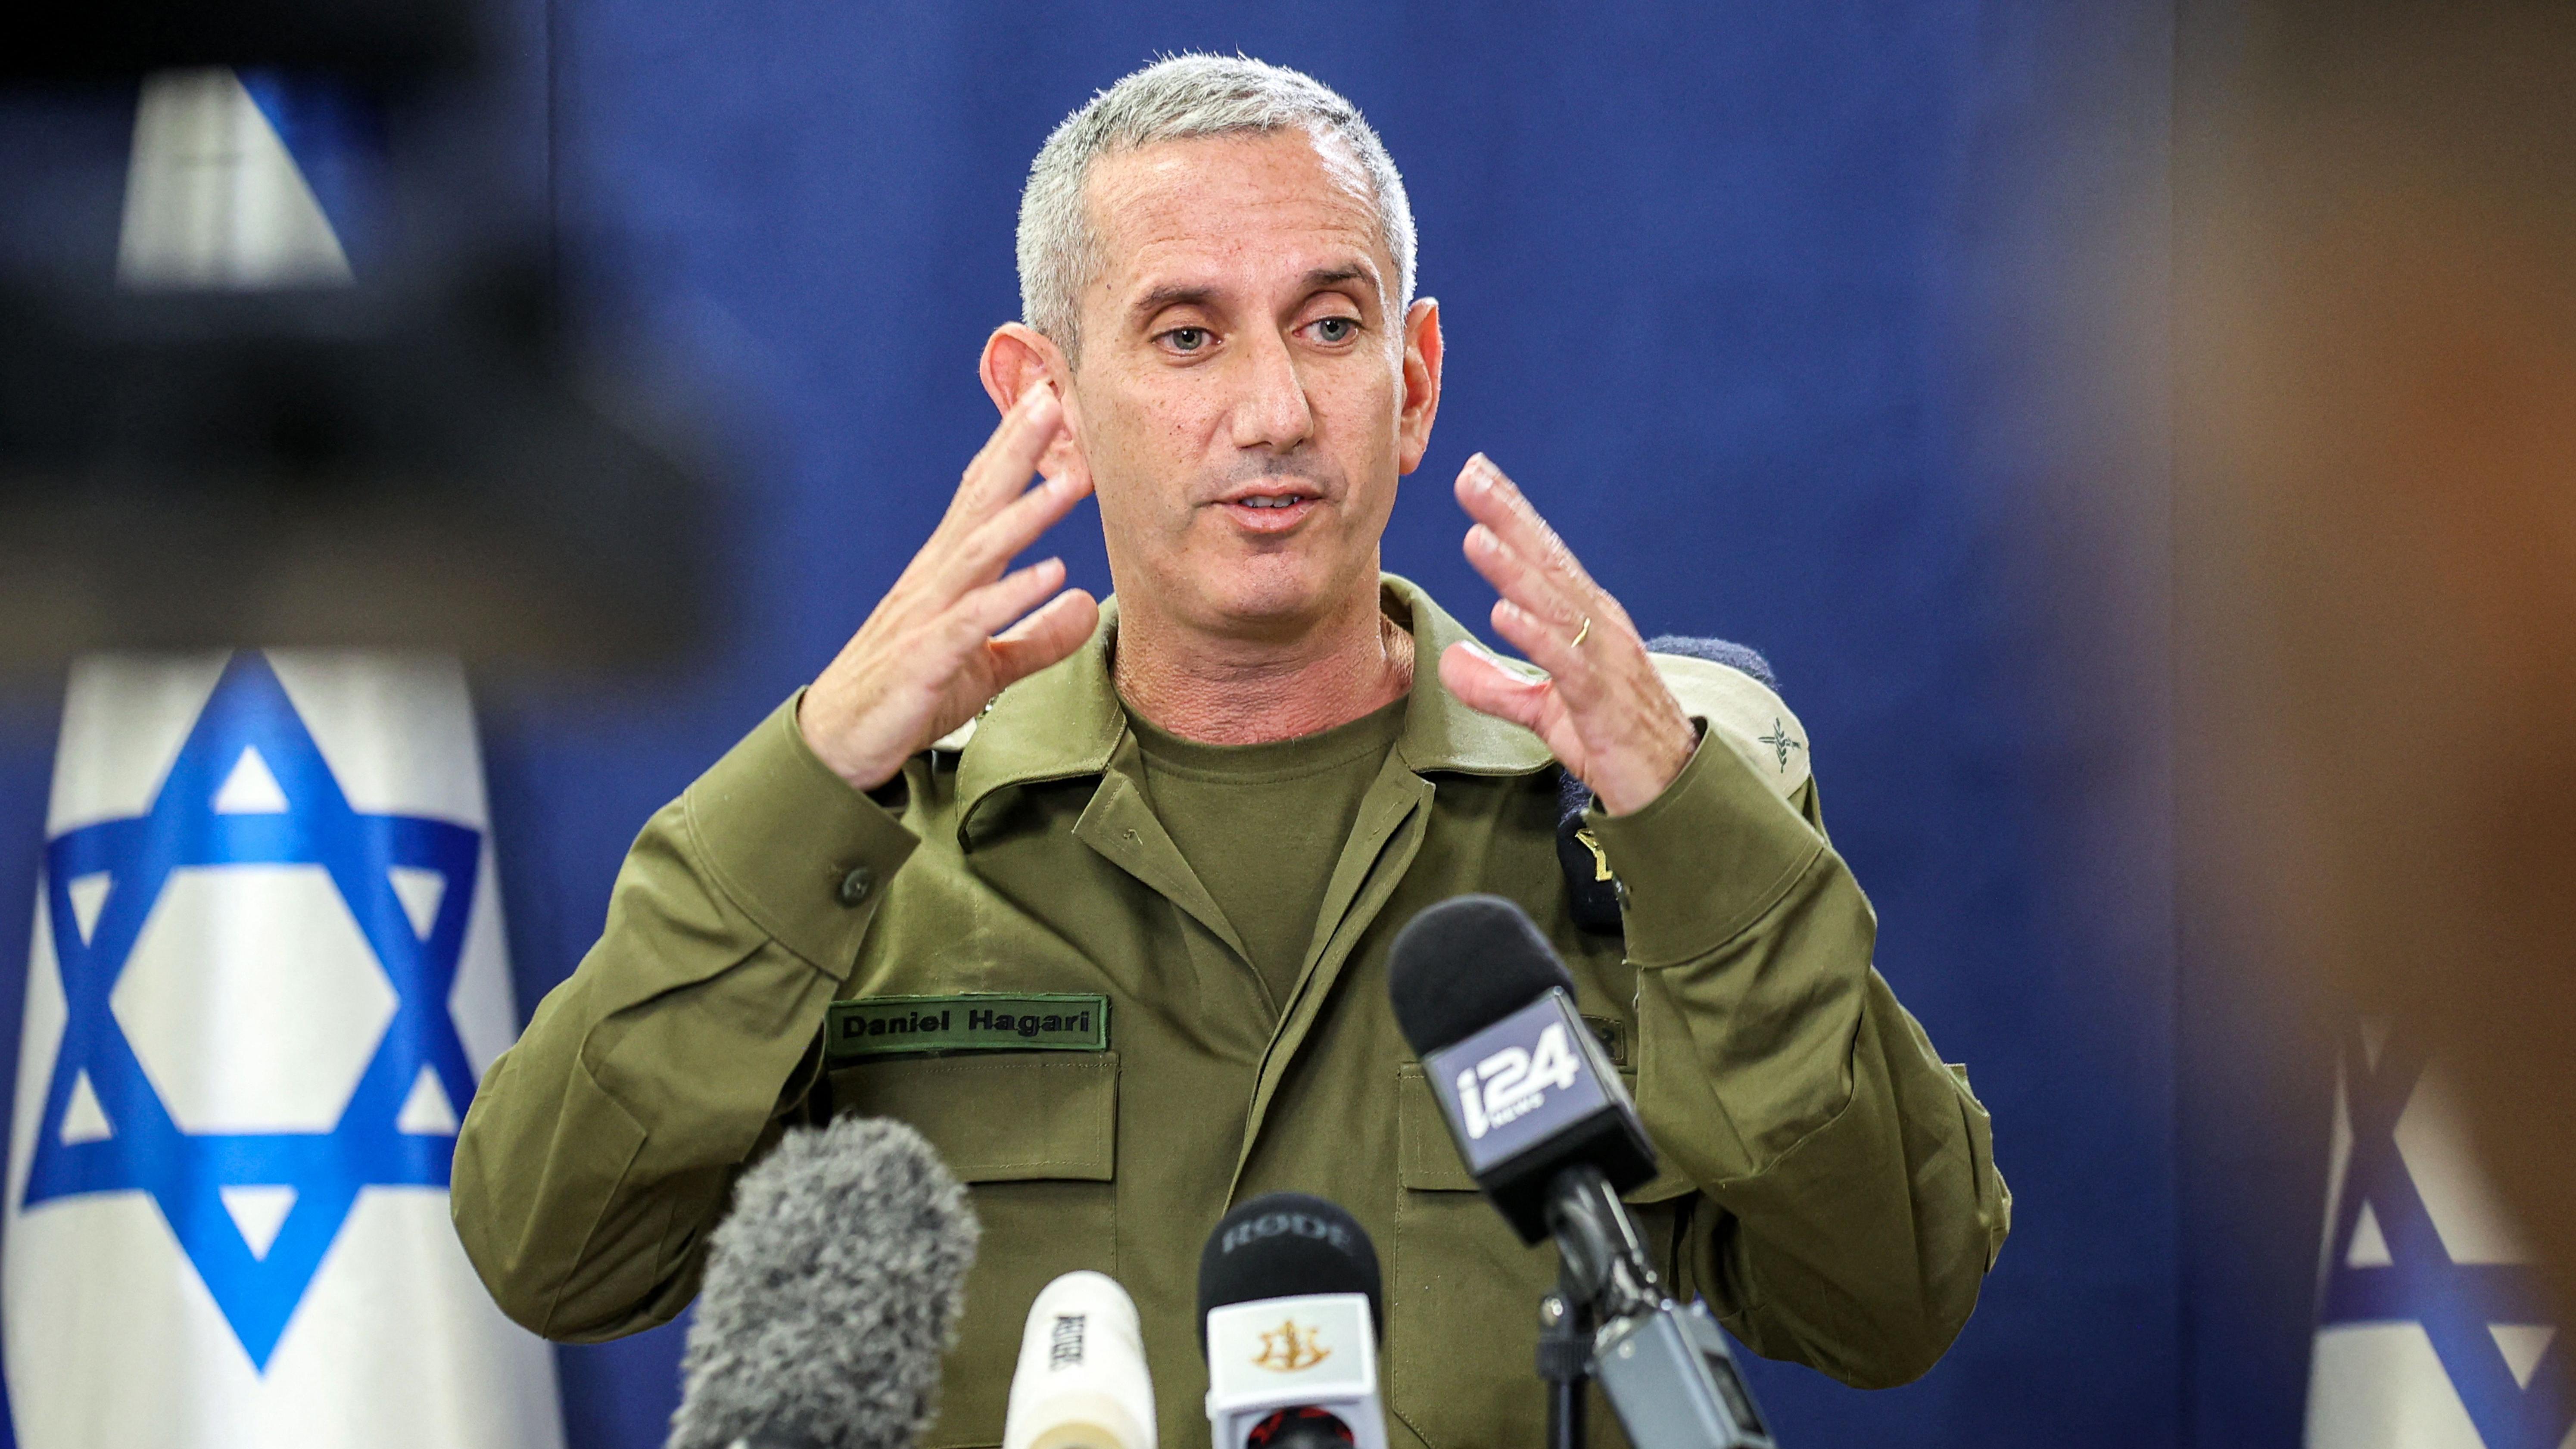 O porta-voz do exército israelense, contra-almirante Daniel Hagari, fala à imprensa no Kirya, que abriga o Ministério da Defesa de Israel, em Tel Aviv, em 18 de outubro de 2023